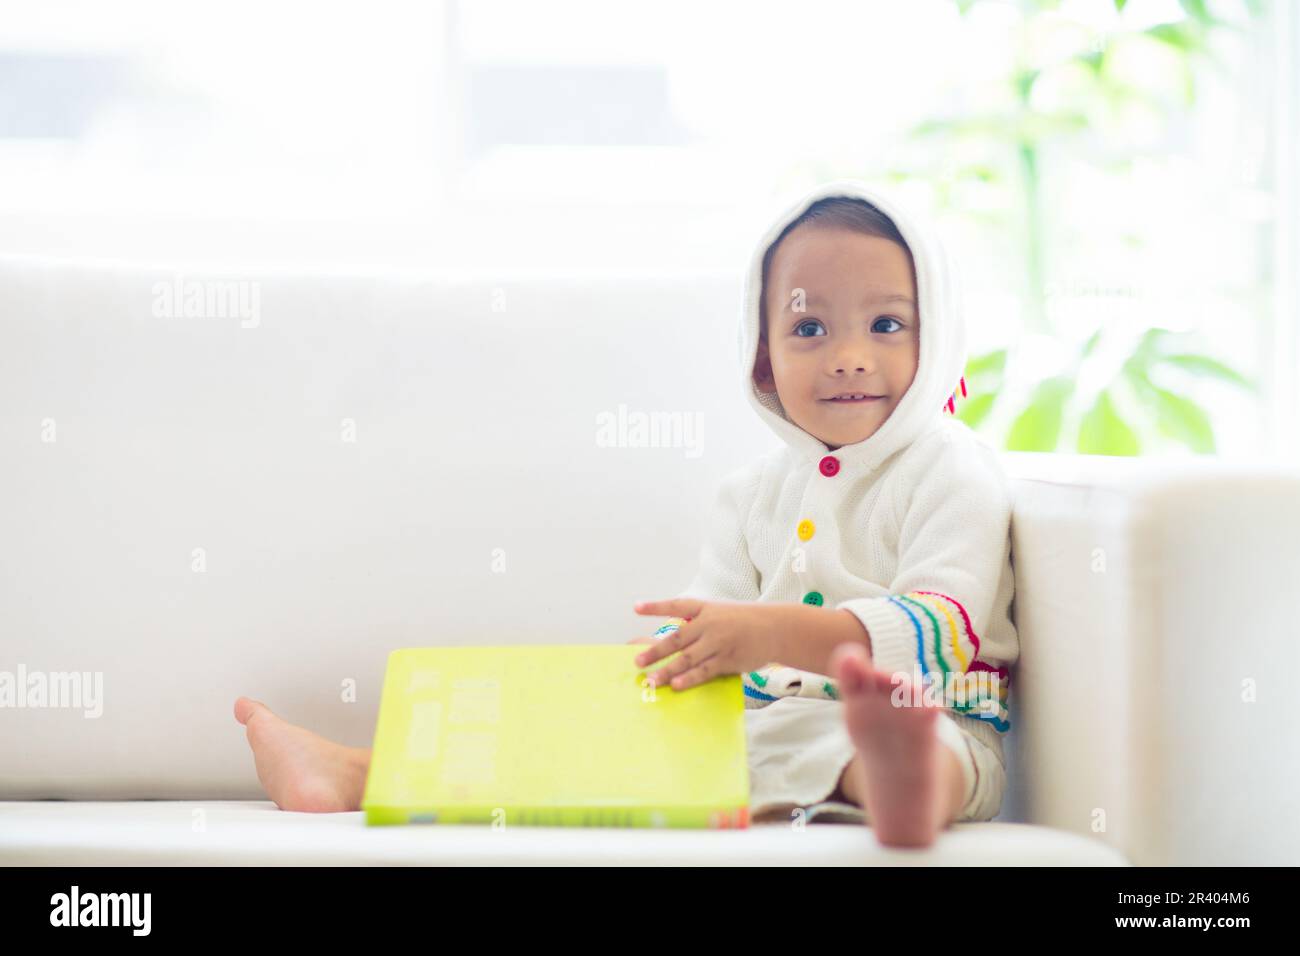 Bébé garçon lisant un livre. Les enfants lisent. Adorable enfant asiatique tenant un livre amusant et coloré d'âge préscolaire. Développement précoce et éducation. Banque D'Images